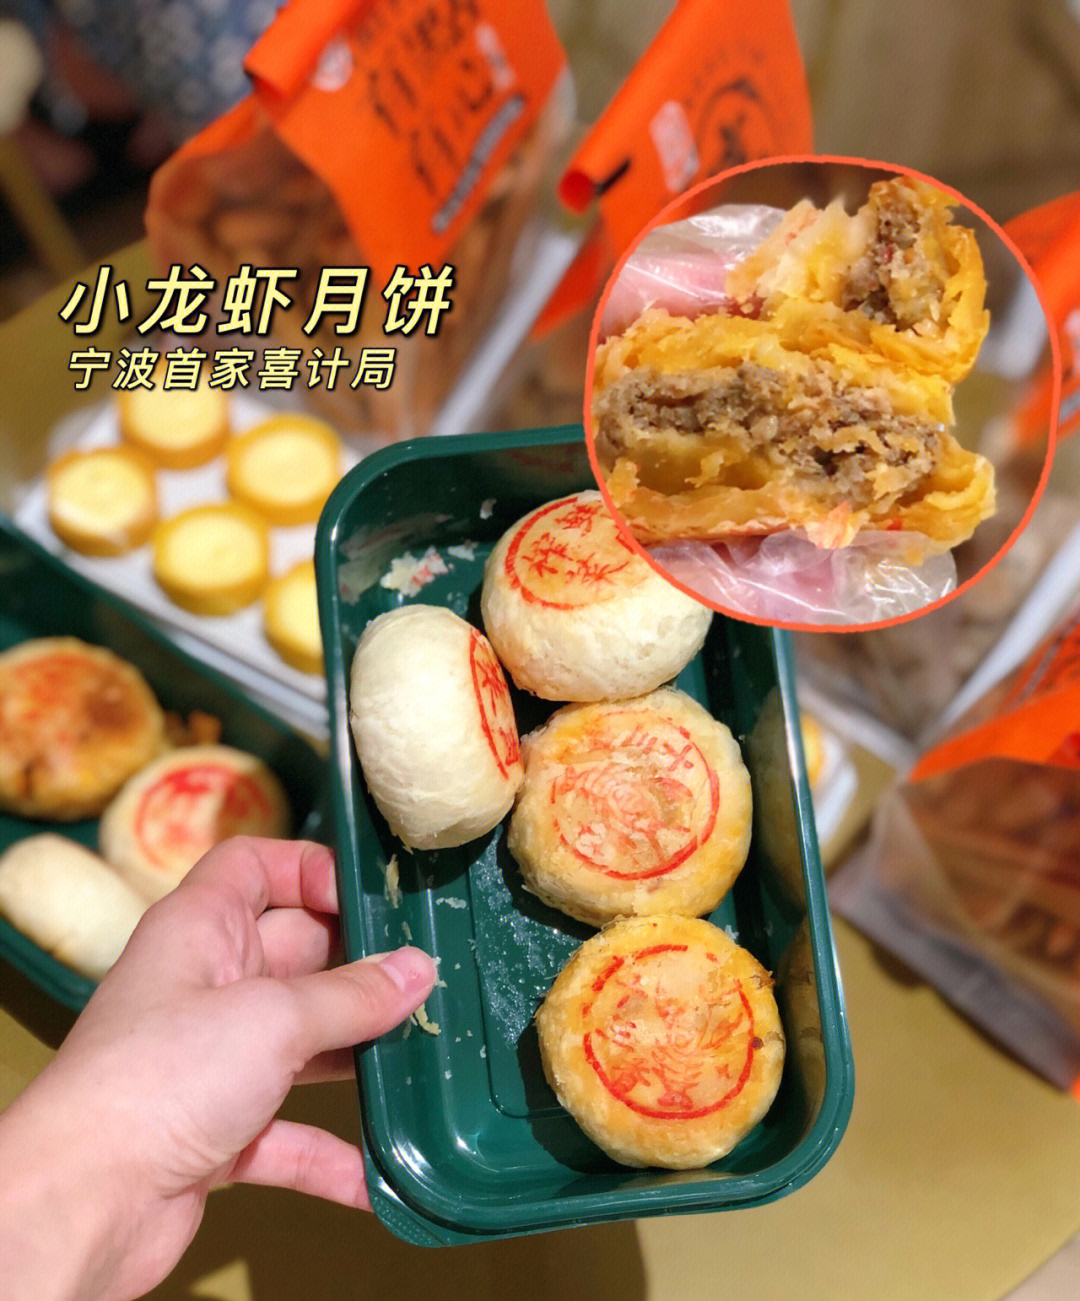 宁波新店75小龙虾月饼74也太好吃了吧